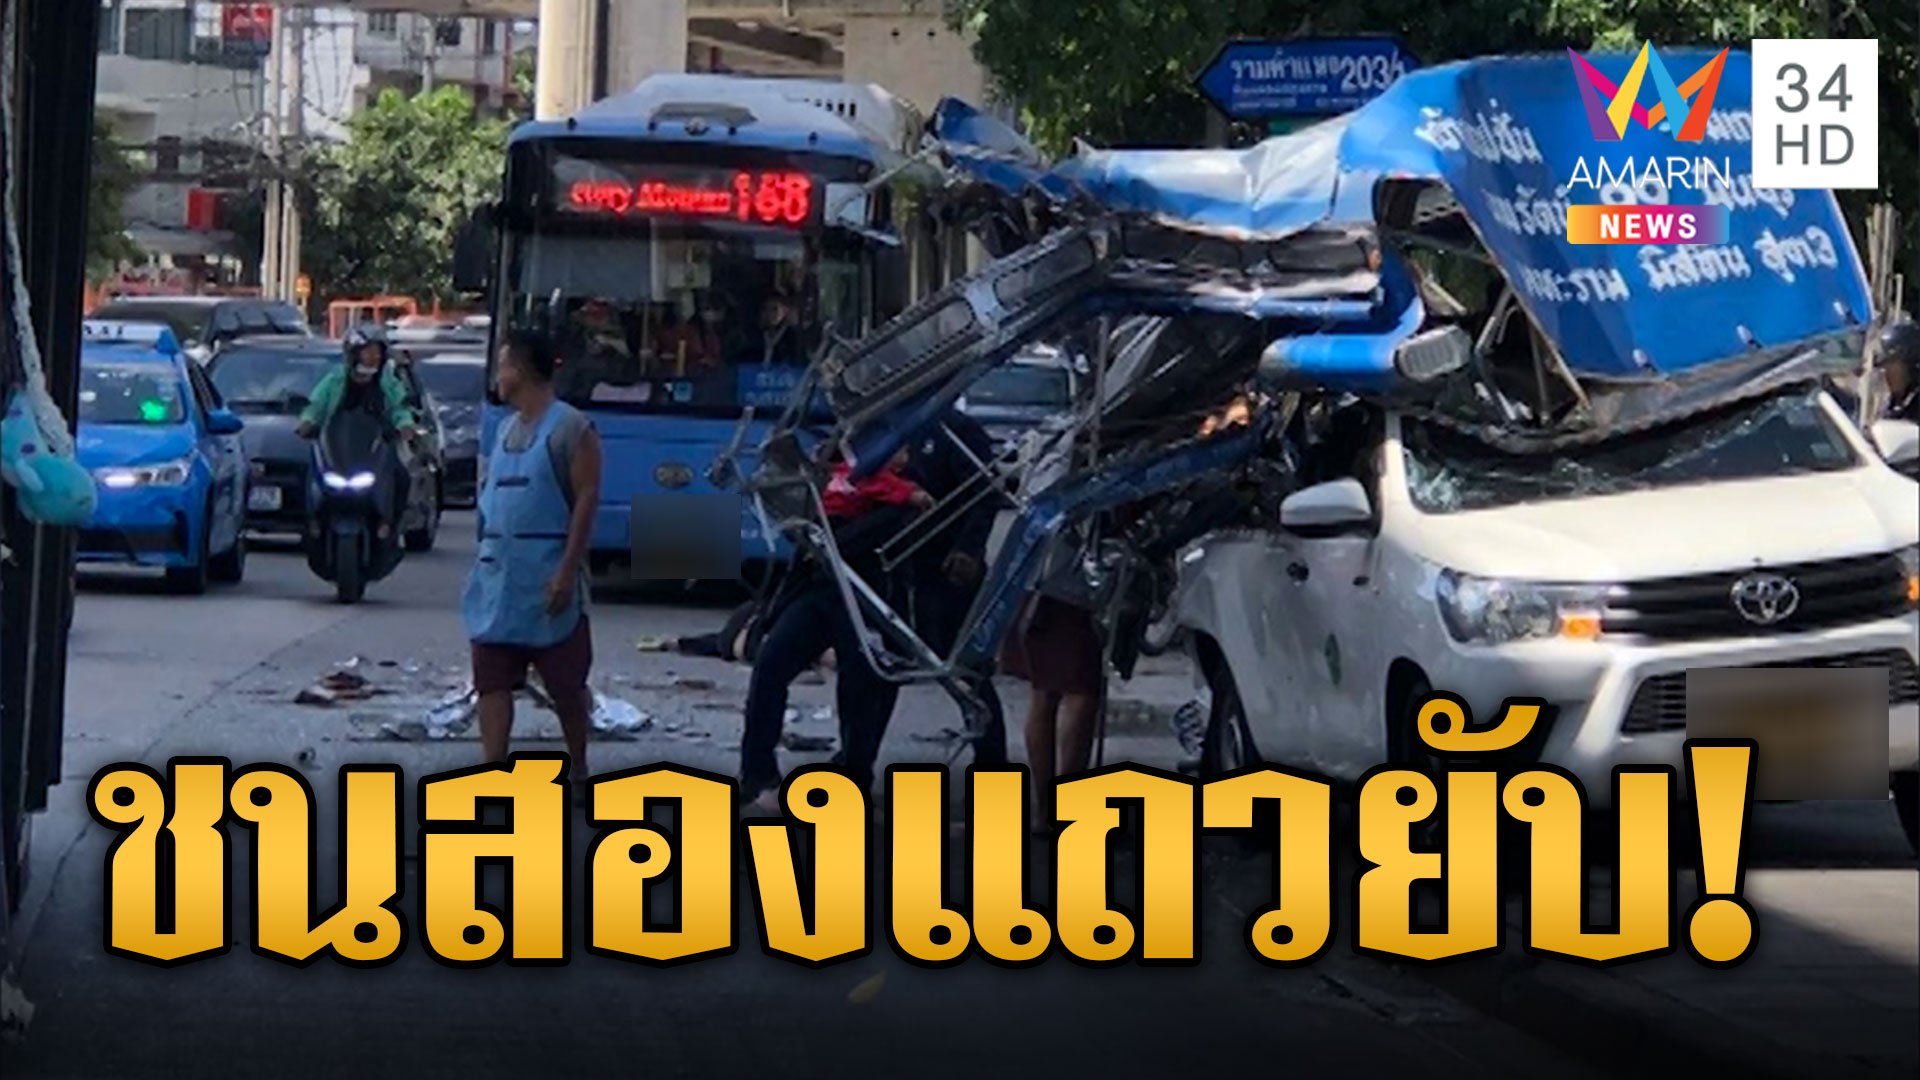 รถเมล์พุ่งชนรถสองแถวพังยับผู้โดยสารเจ็บระนาว 10 ราย | ข่าวเที่ยงอมรินทร์ | 14 พ.ย. 66 | AMARIN TVHD34